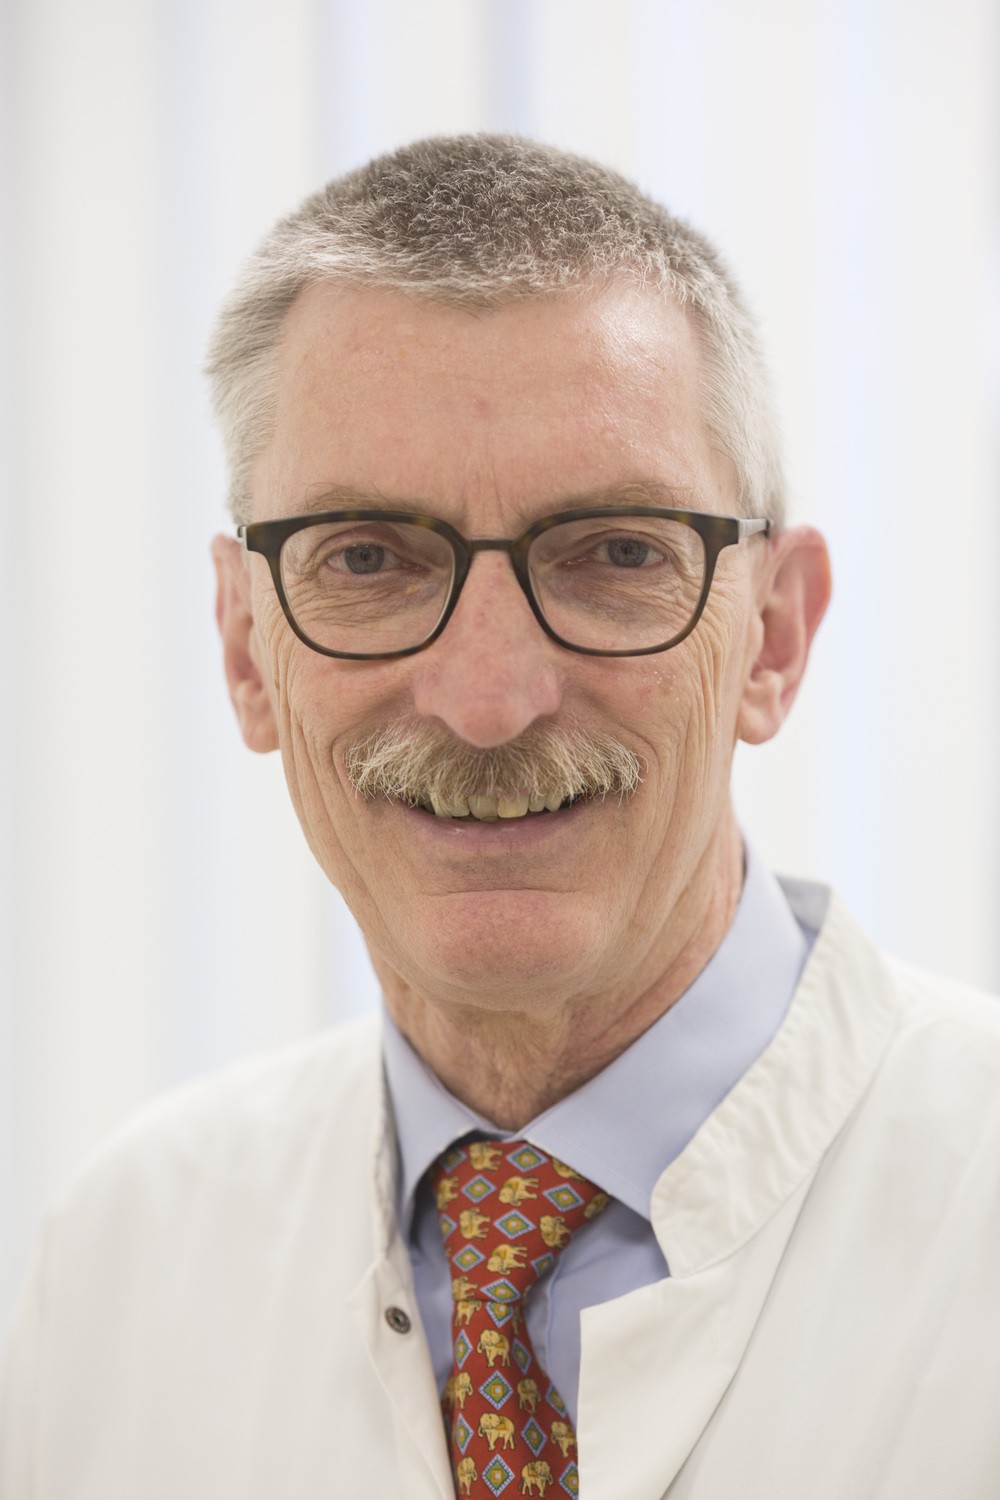 Prof. Dr. Christoph Baerwald, Leiter der Rheumatologie am UKL, leitet das Gesprächsforum am 9. Oktober.